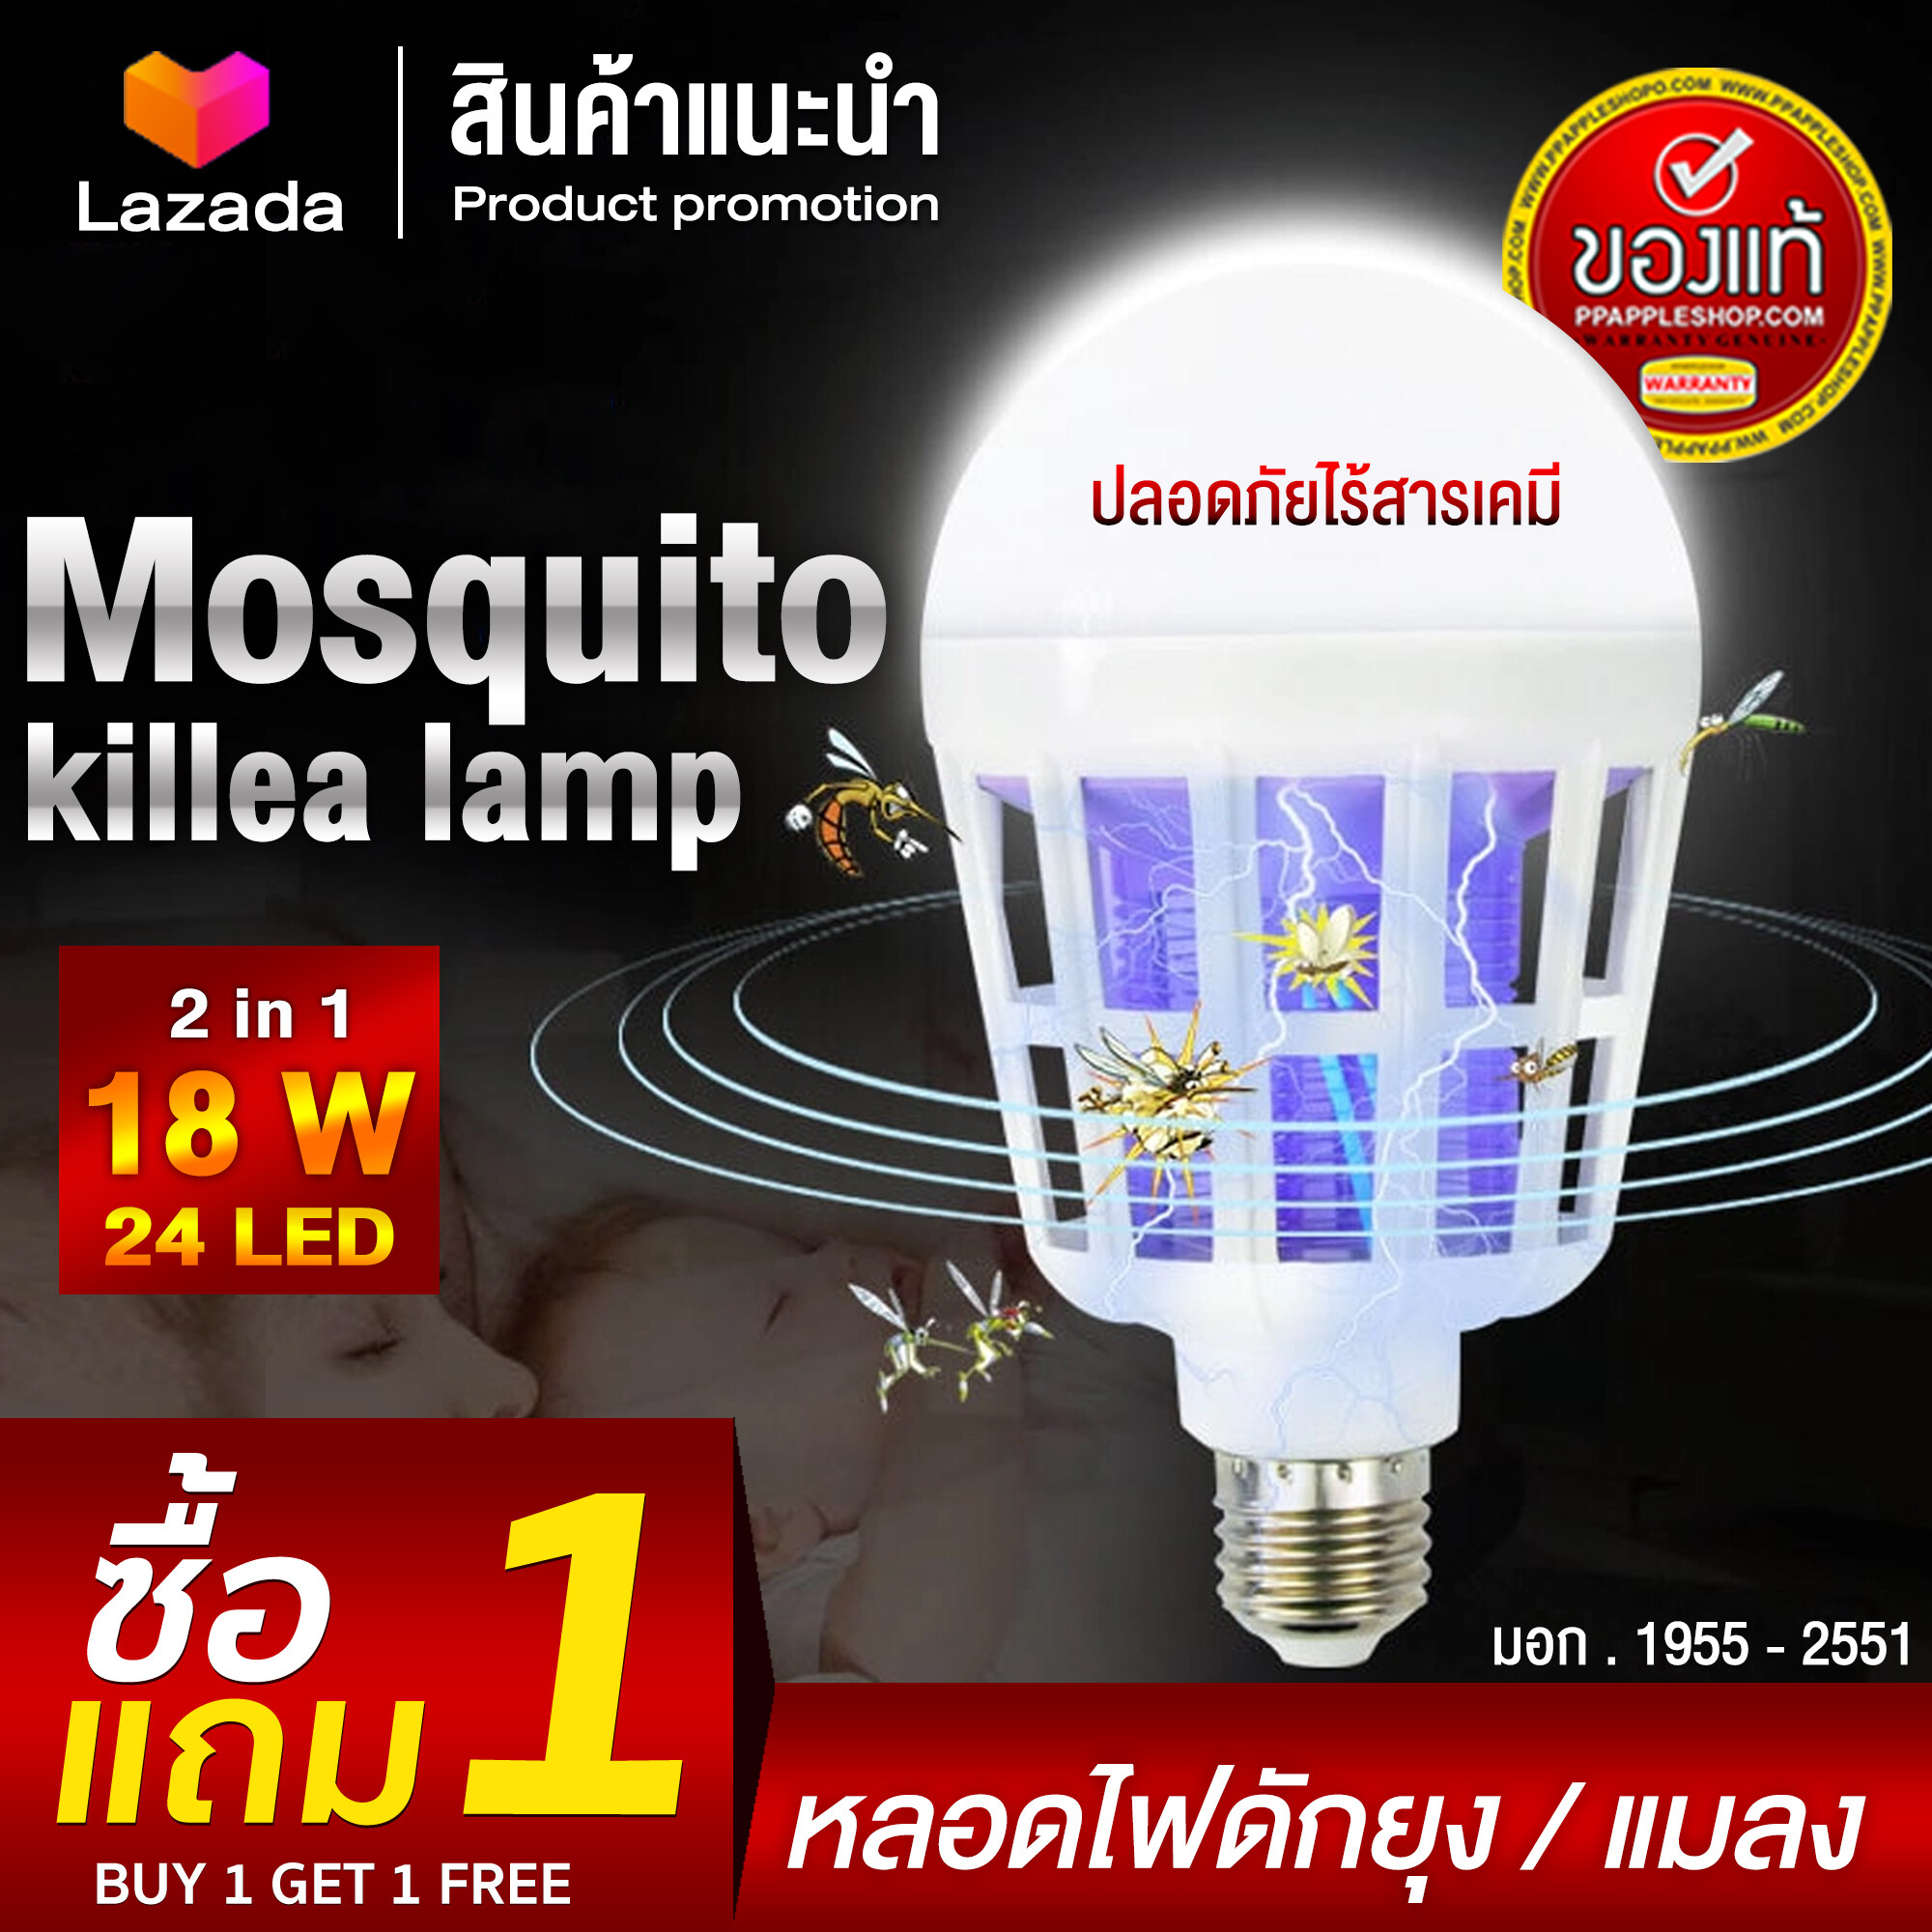 1แถม1 หลอดไฟล่อแมลง 2in1 หลอดไฟไล่ยุง หลอดLED24ดวง แสงบลูไลท์สีม่วง Mosquito Killer Lamp12,15,18W (ของแท้) มอก.1955-2551 ได้ผล100%  ส่งฟรี !!!